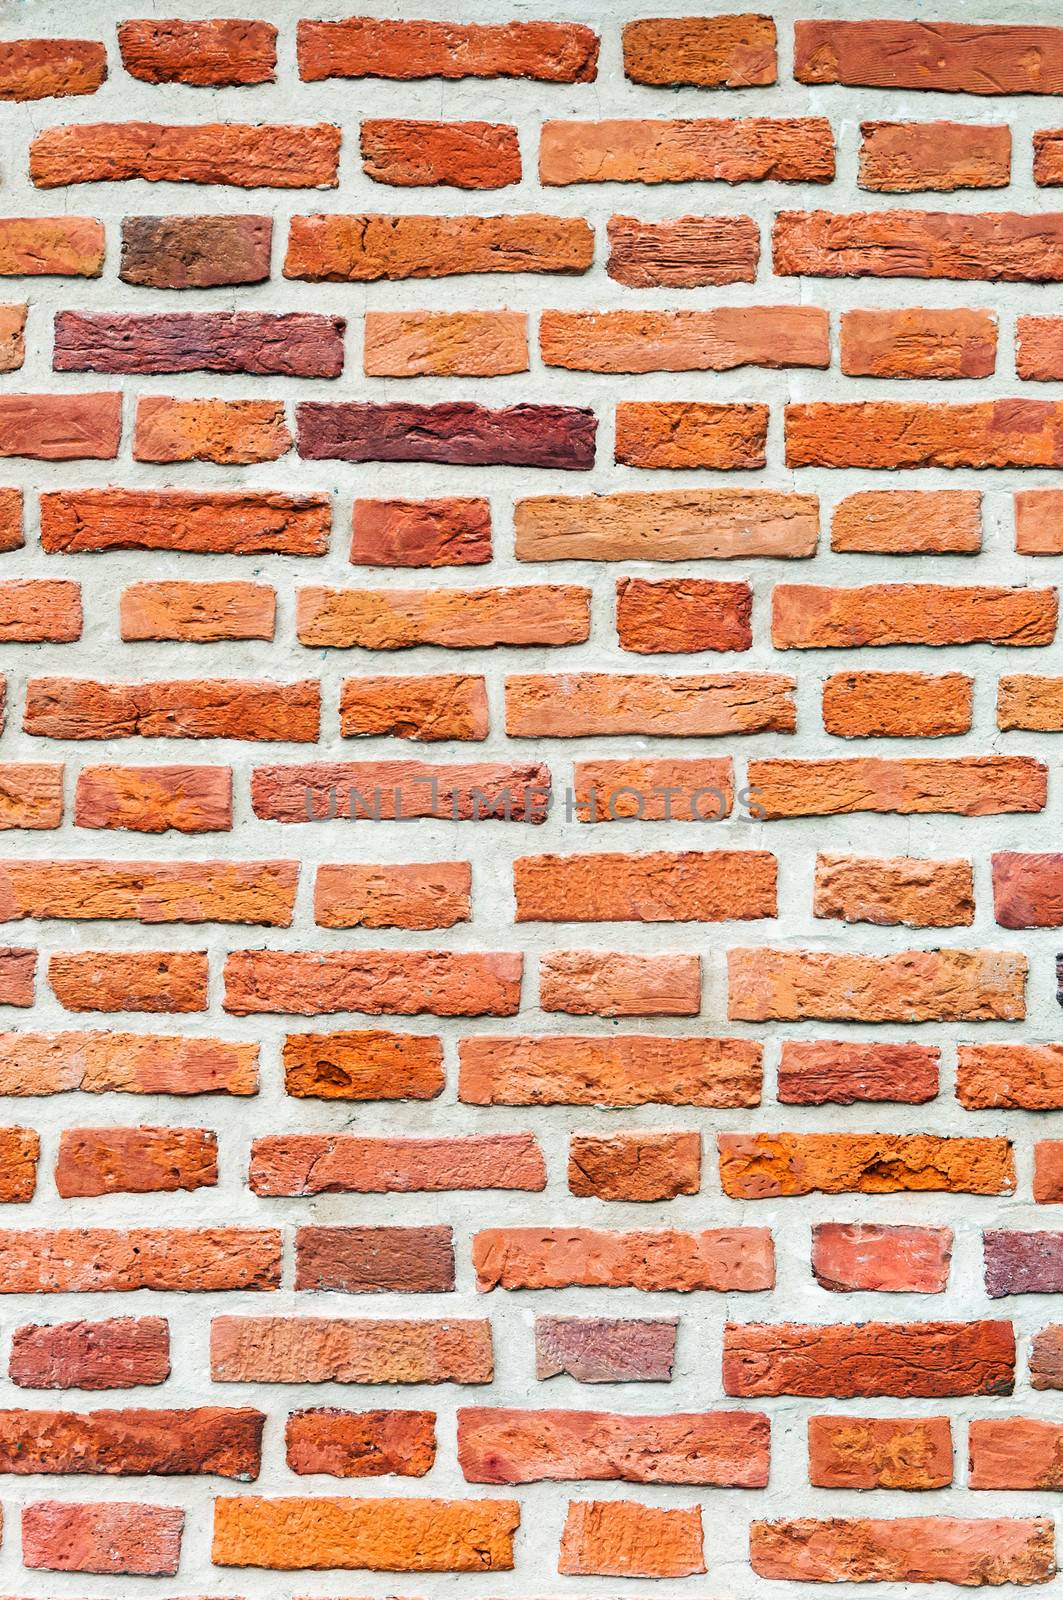 Brick texture by mkos83